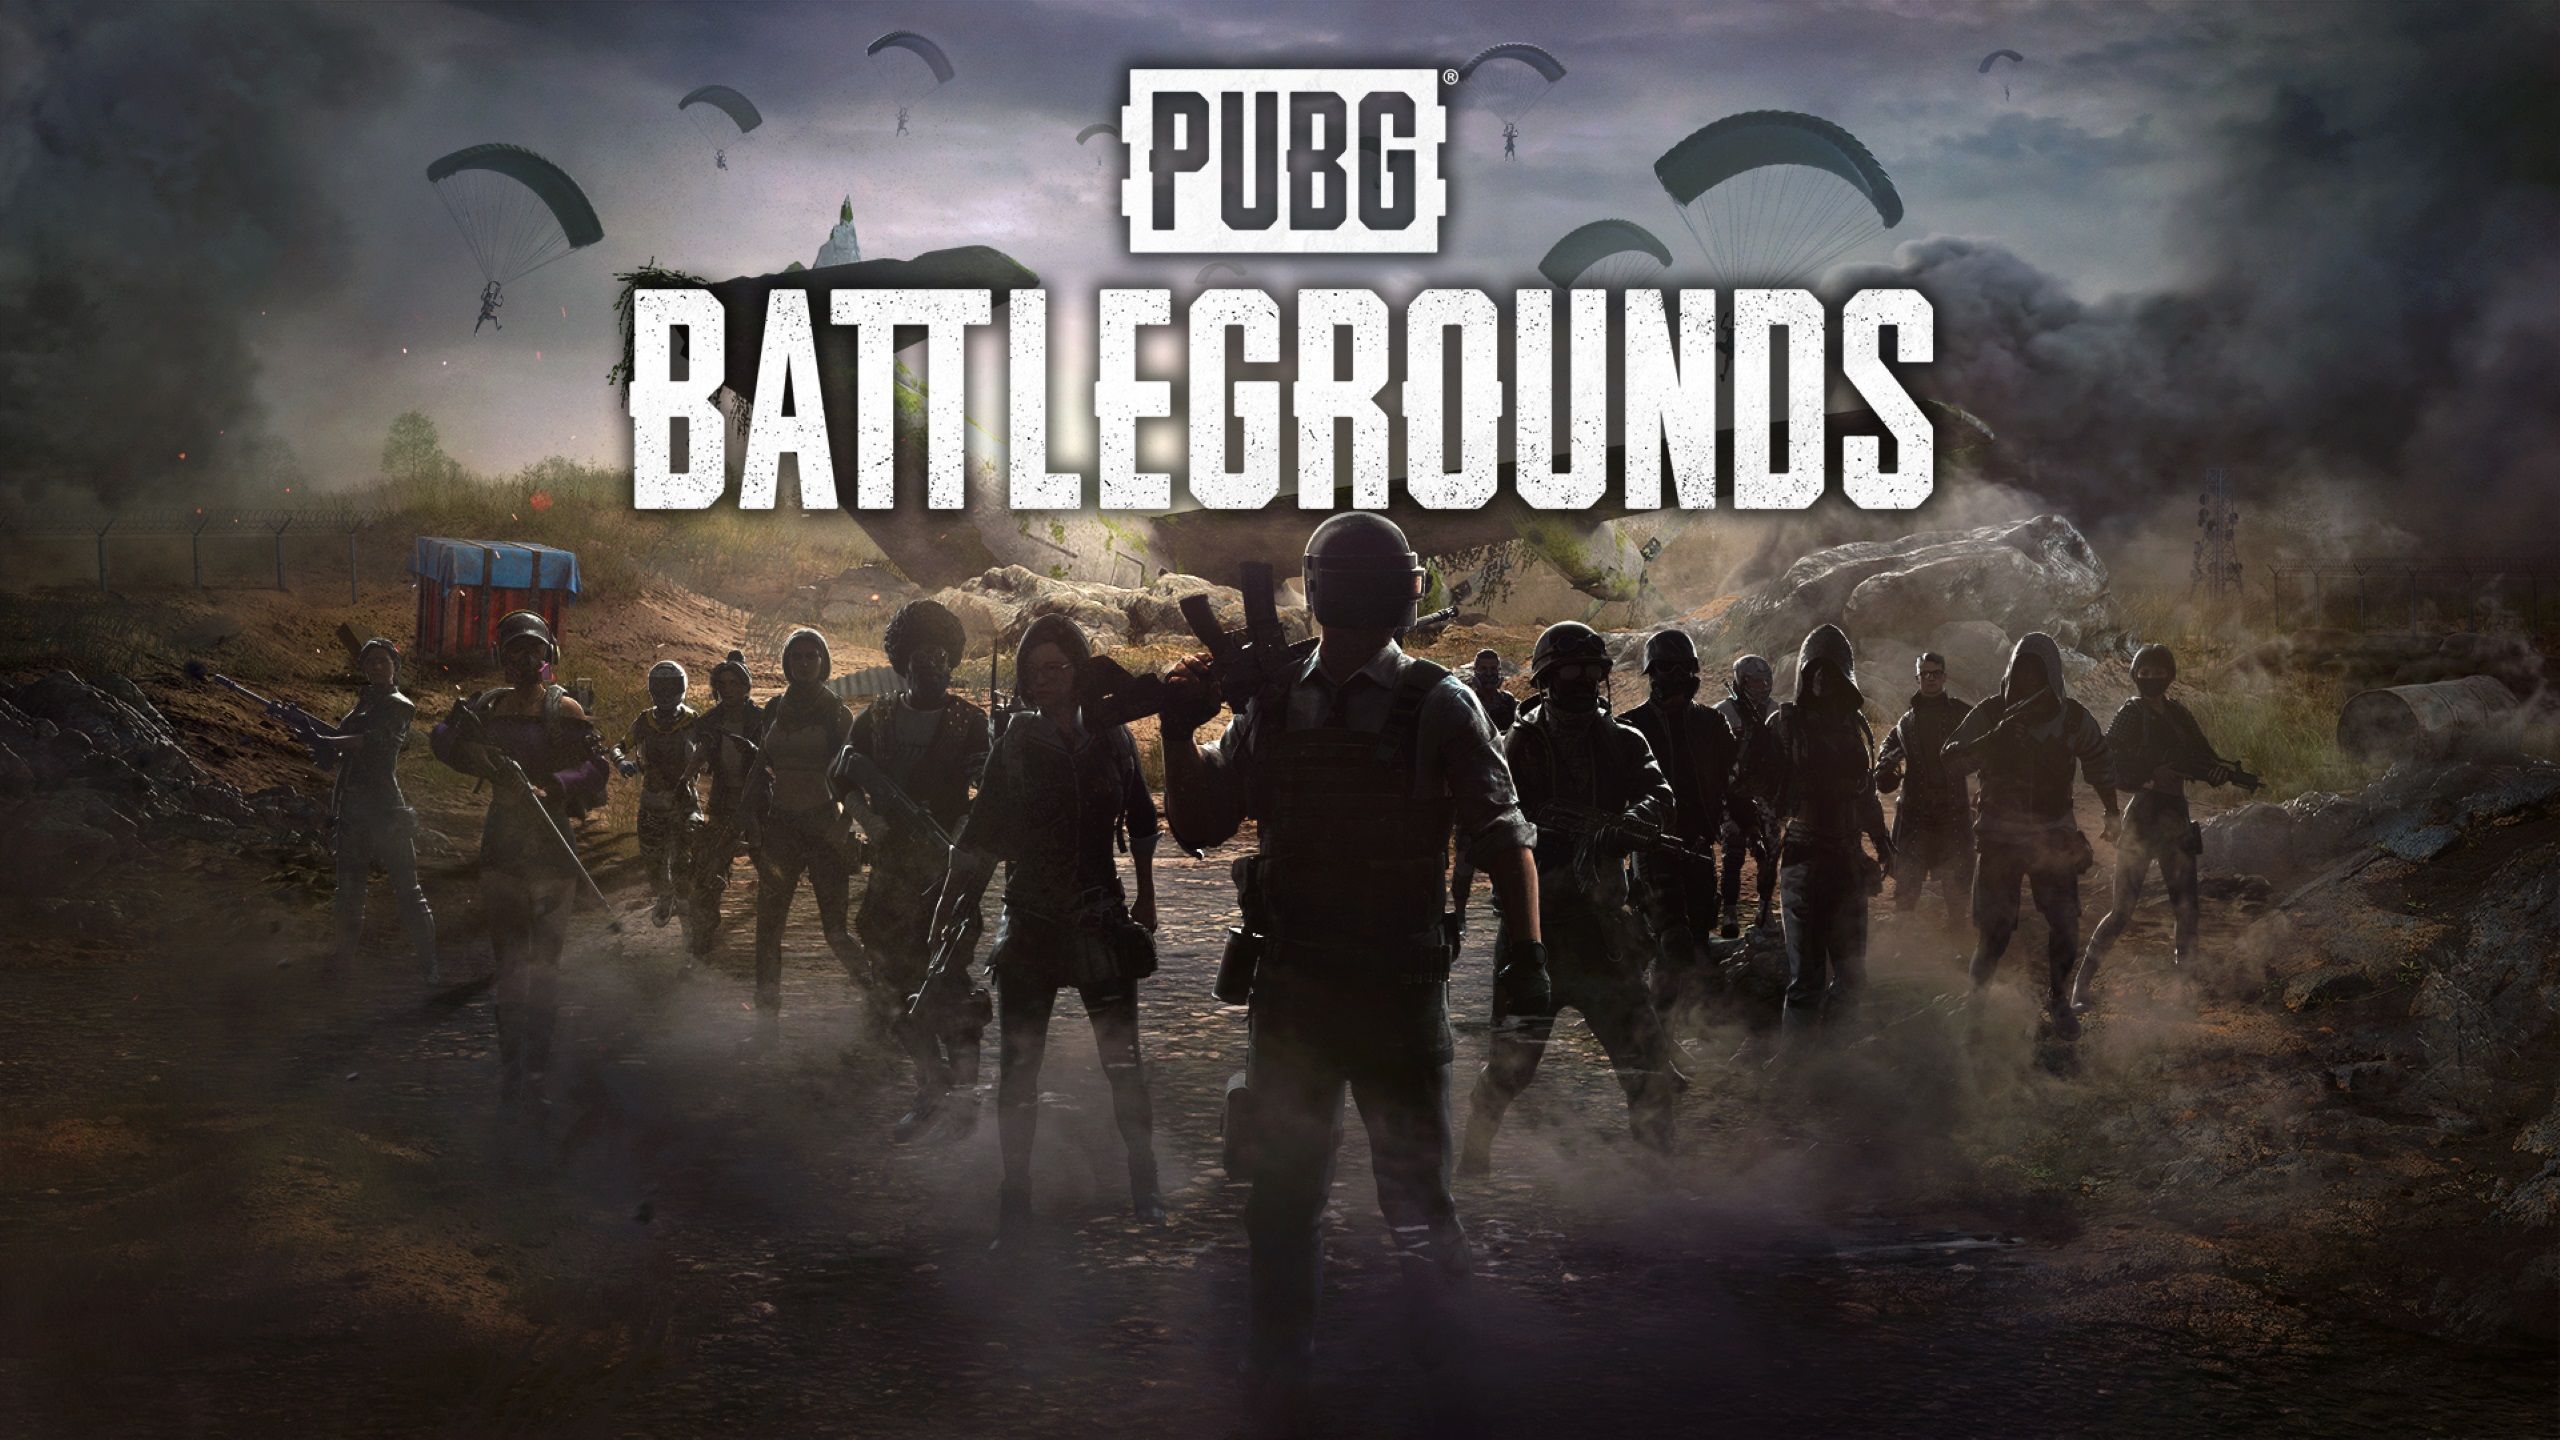   pubg   battlegrounds -  